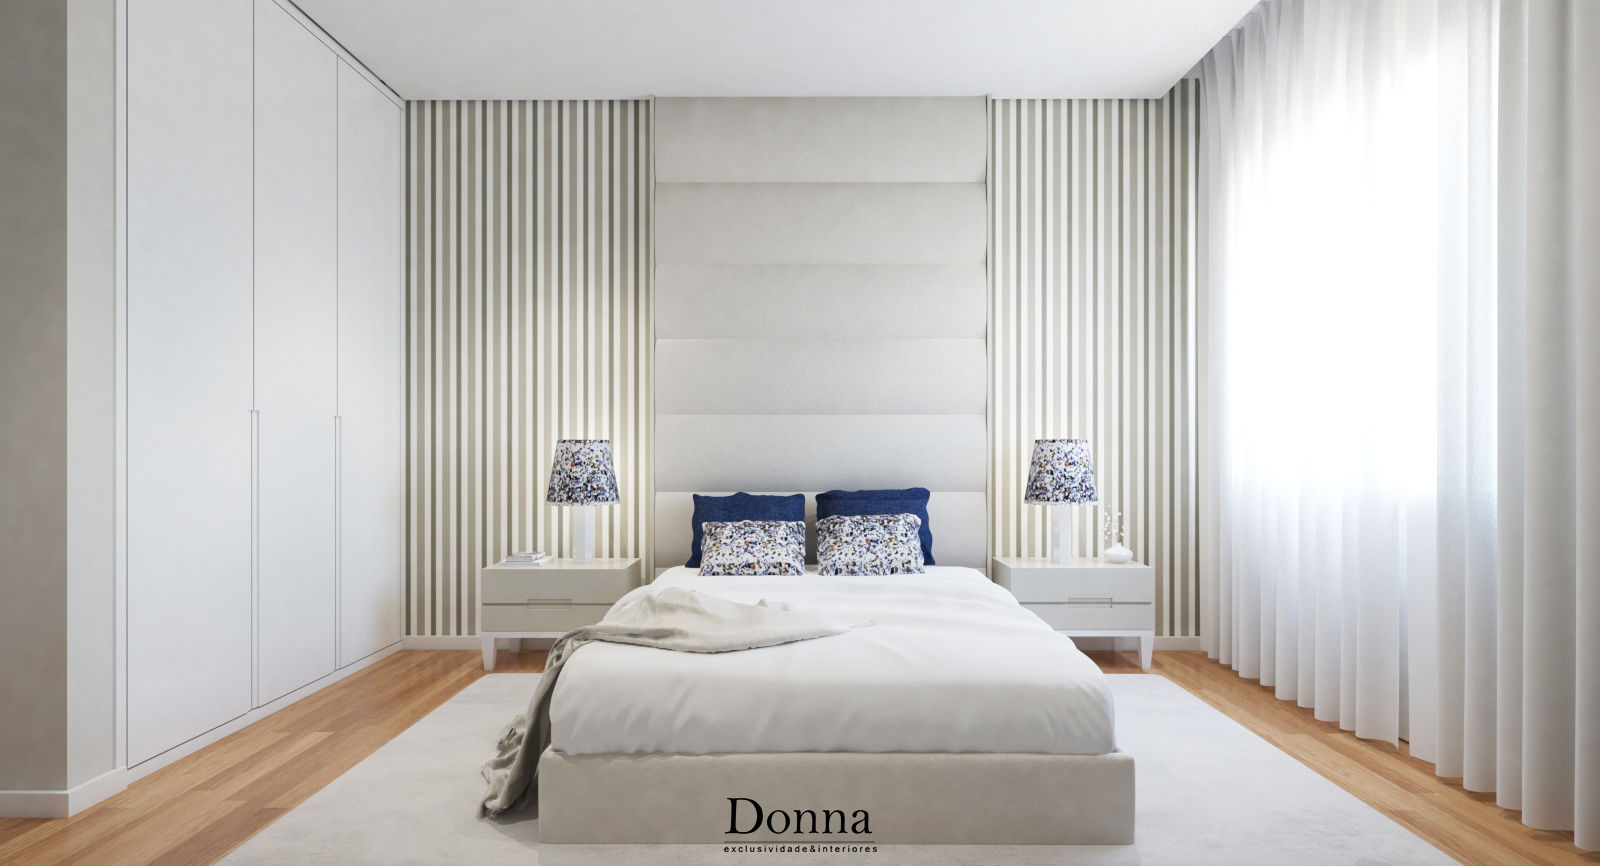 Apartamento Duplex no Porto, Donna - Exclusividade e Design Donna - Exclusividade e Design Camera da letto moderna Letti e testate